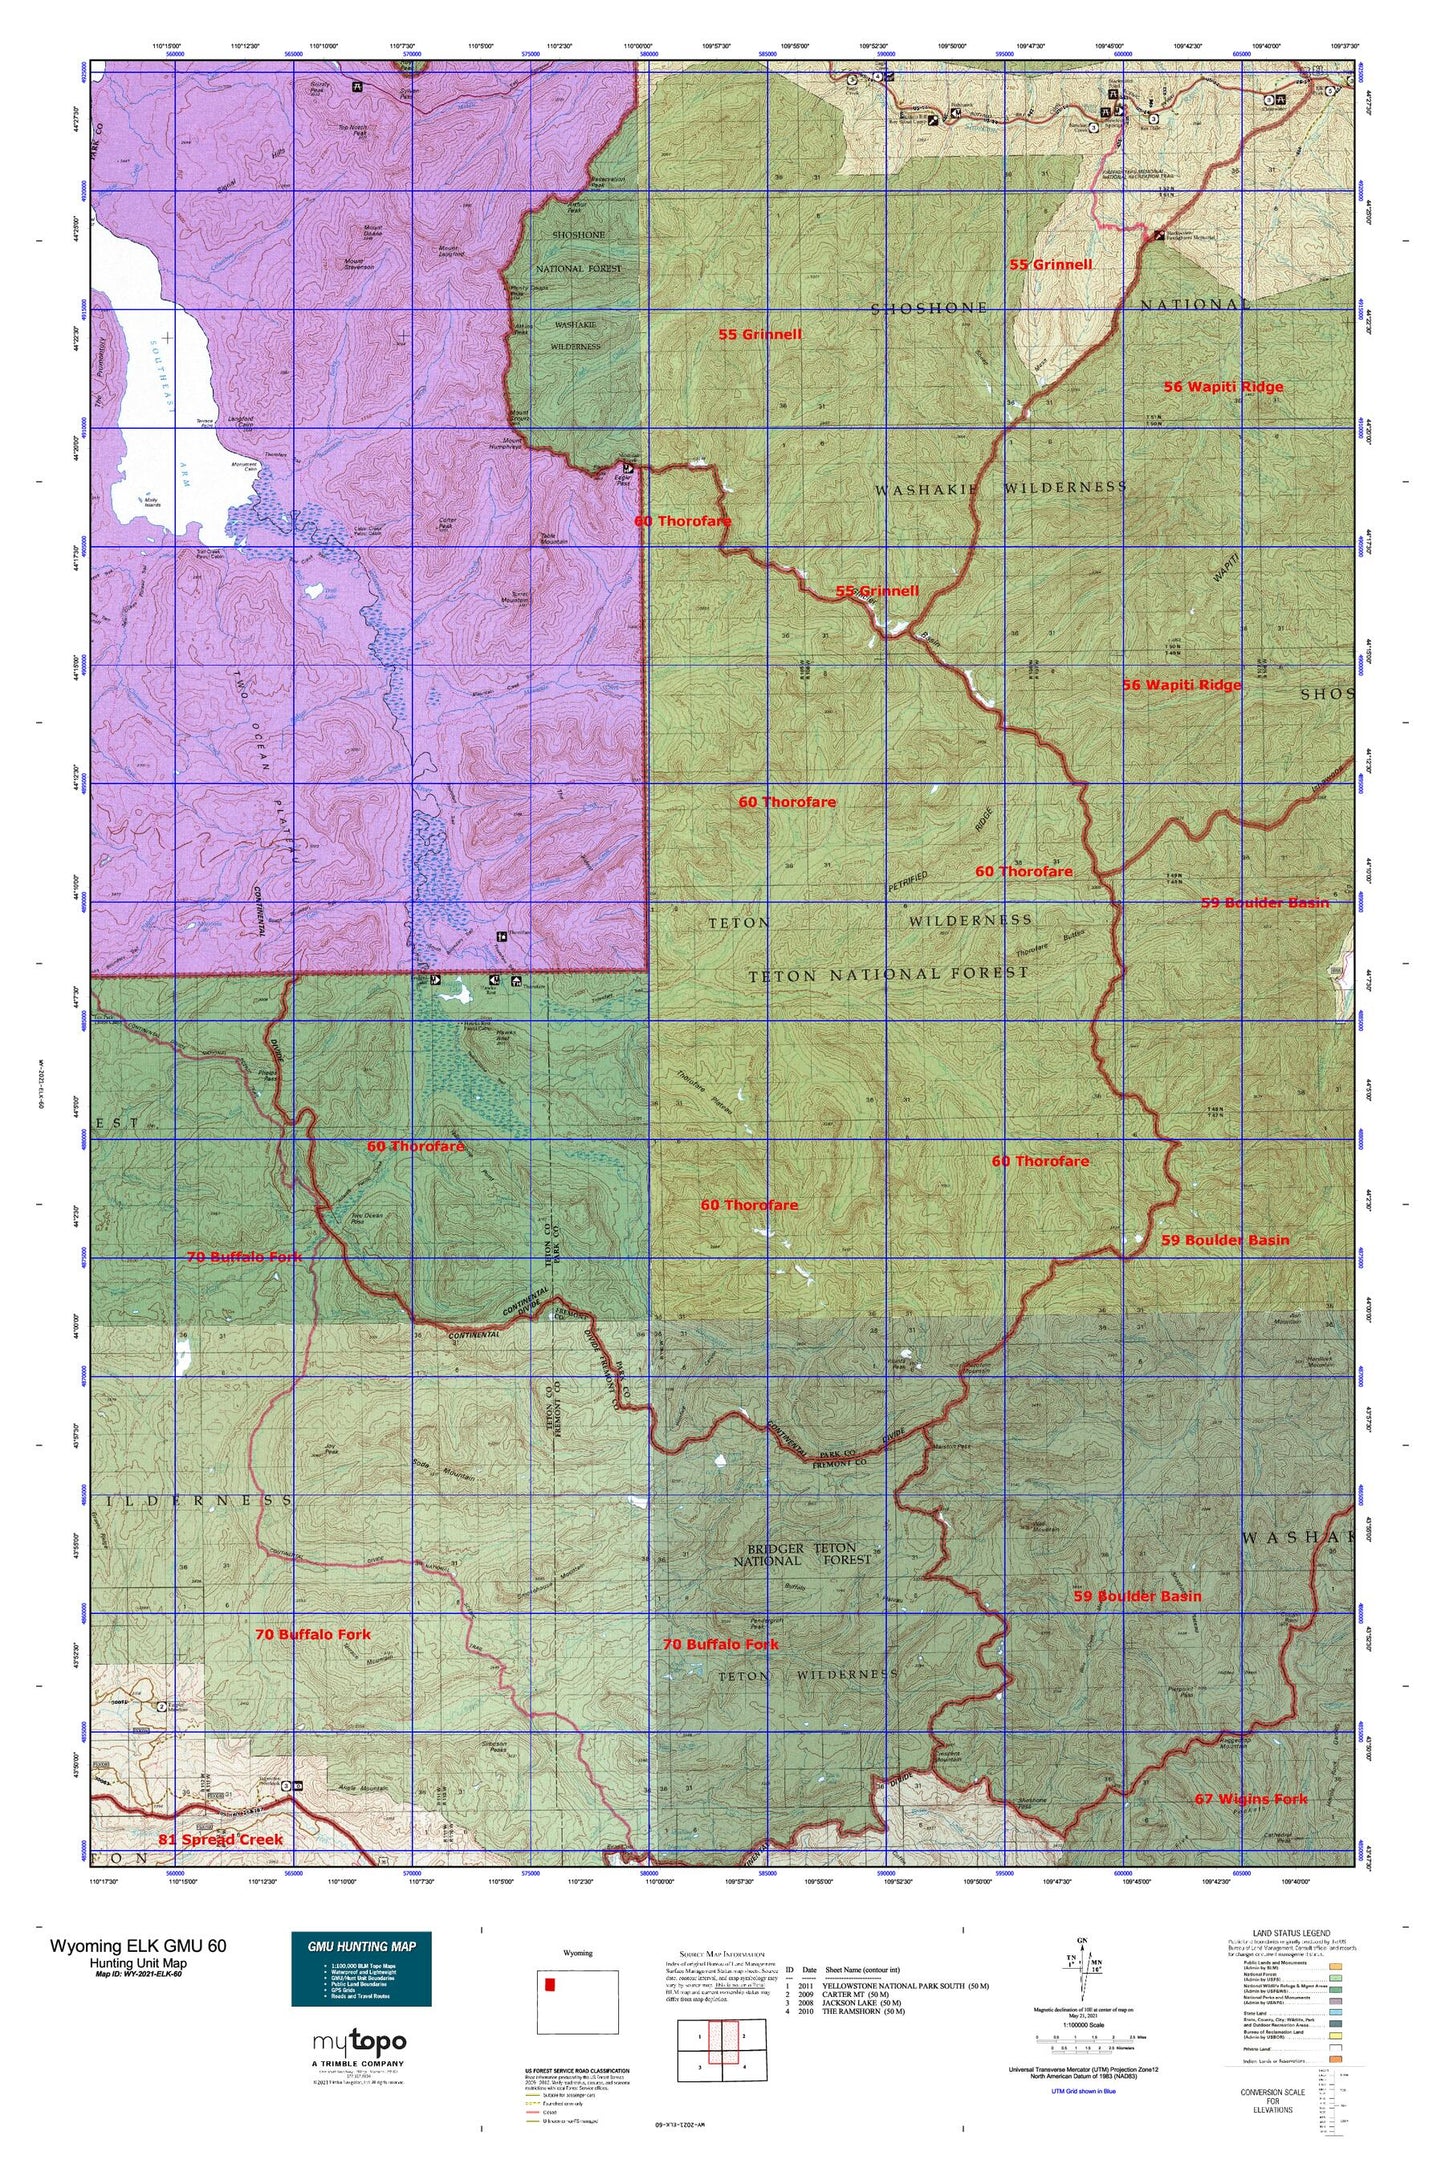 Wyoming Elk GMU 60 Map Image